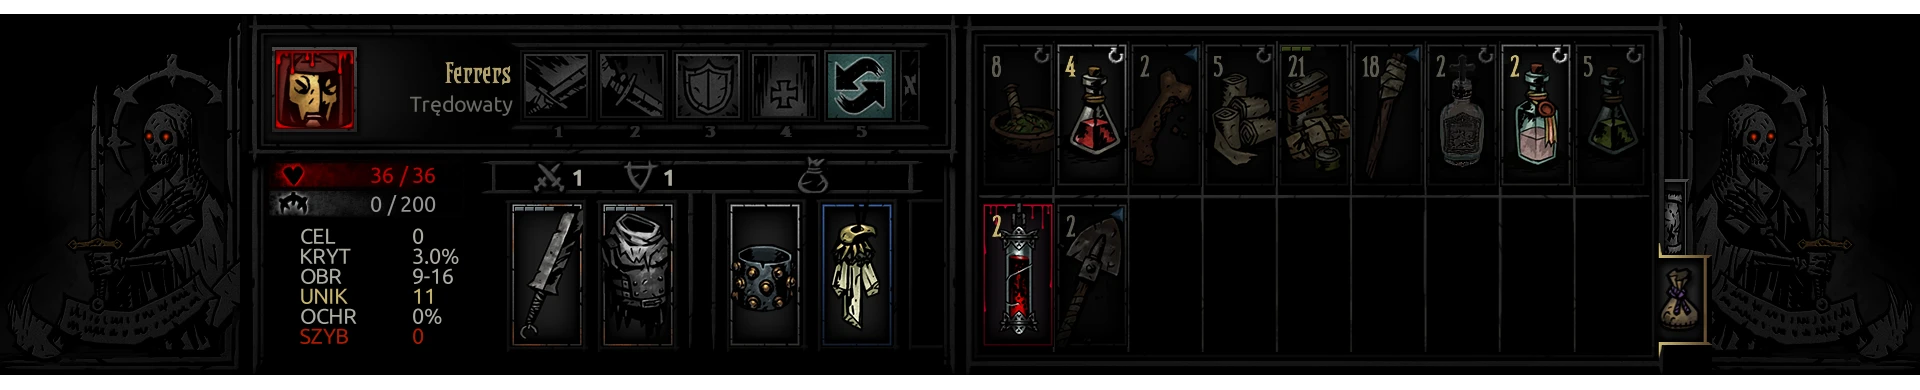 darkest dungeon inventory size mod